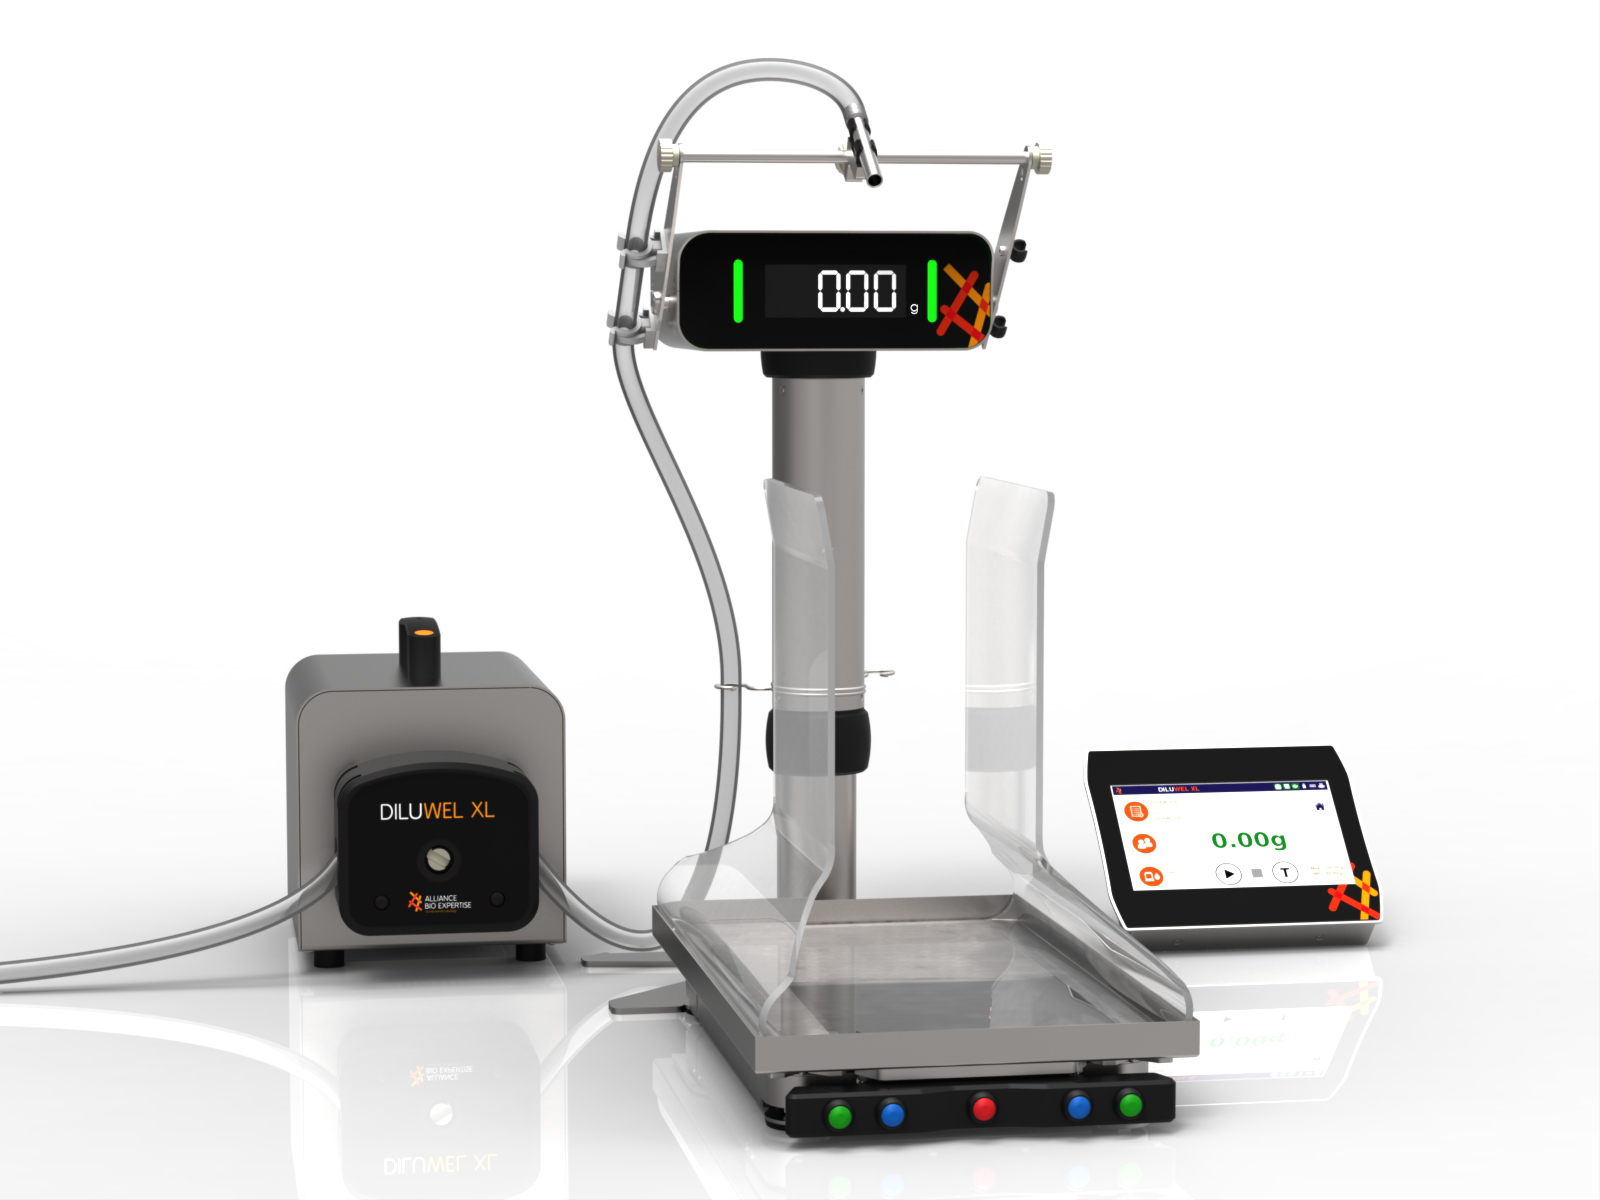 Gravimetrischer XL Verdünner für präzise, automatisierte Verdünnung von Proben in klinischen und mikrobiologischen Laboratorien